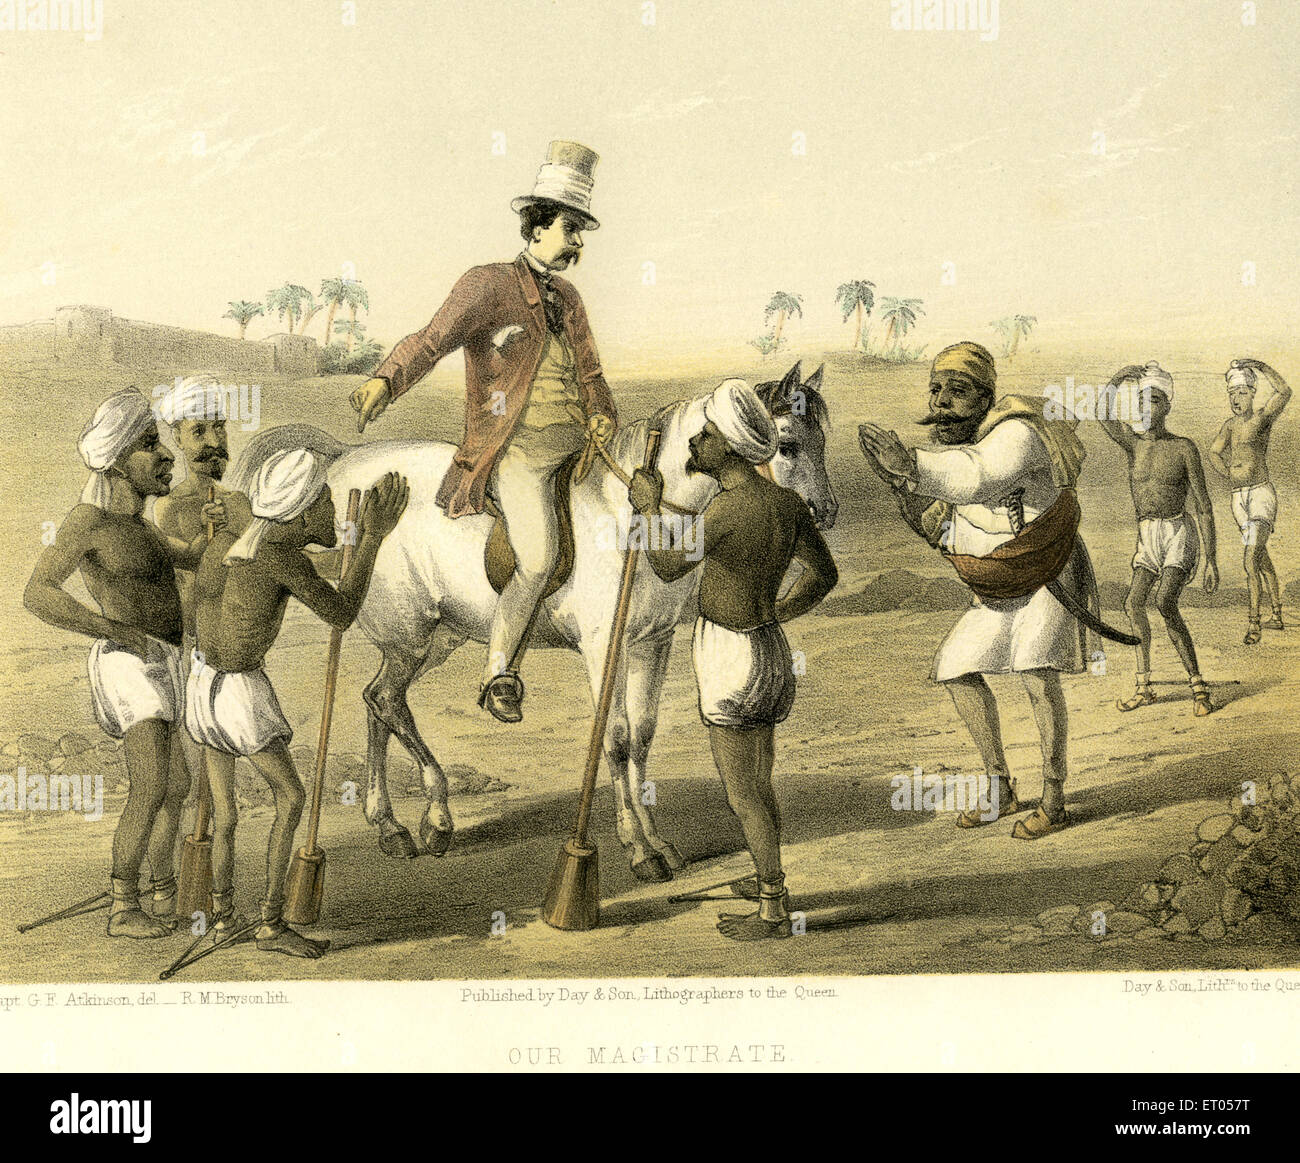 Images de l'Inde coloniale notre magistrat l'officier britannique de l'Inde juge sur l'ordre de cheval livre la justice aux gens de l'Inde art gravure peinture Banque D'Images